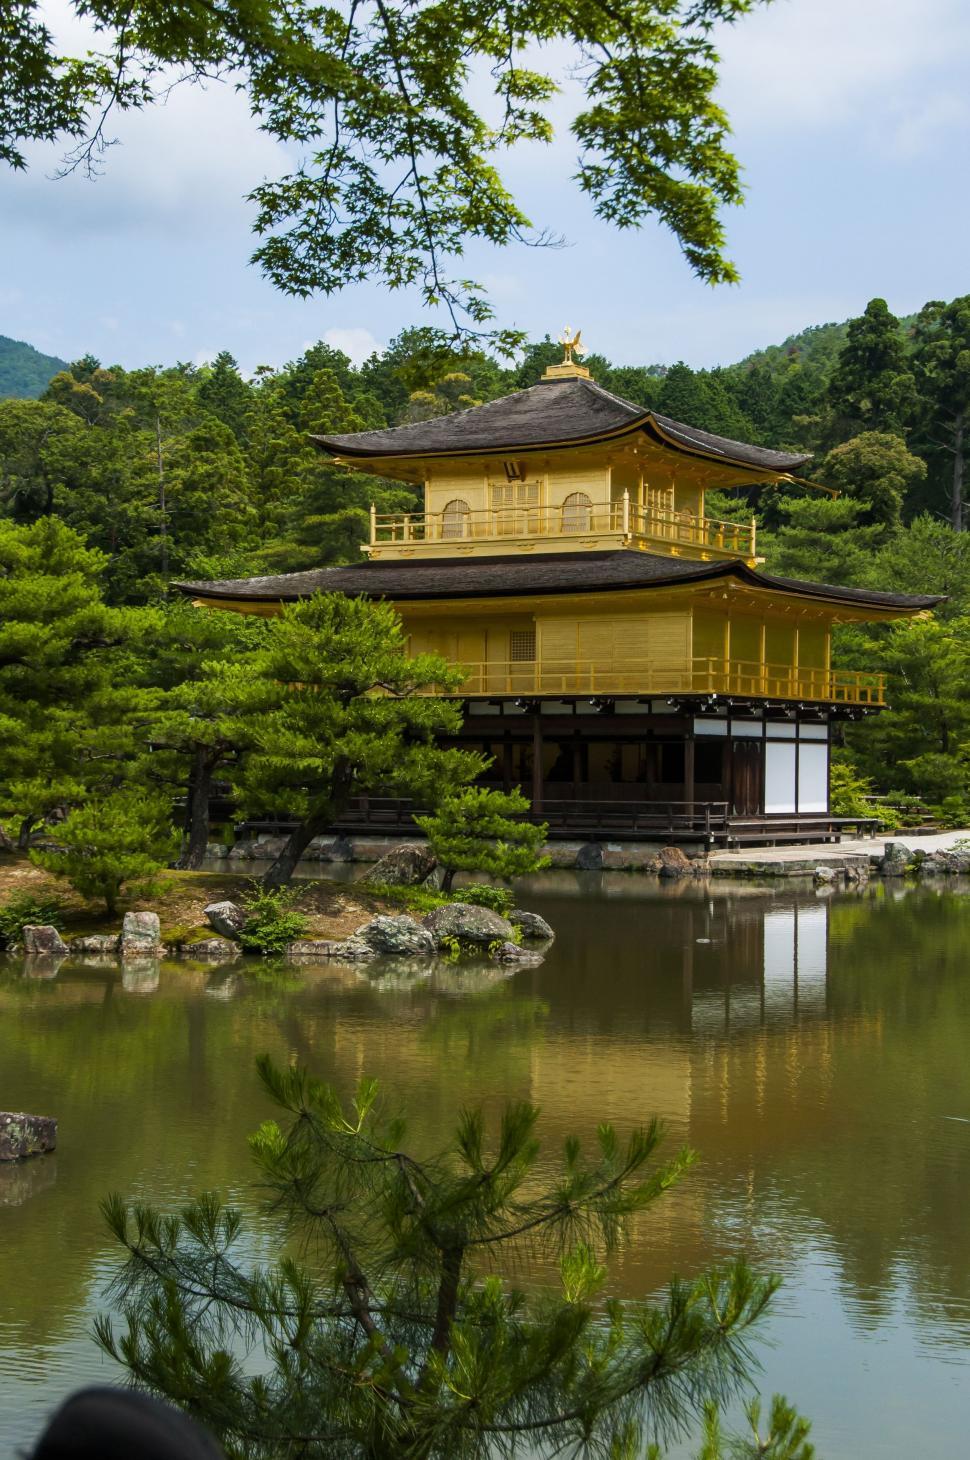 Free Image of Kinkaku-ji in Kyoto, Japan 